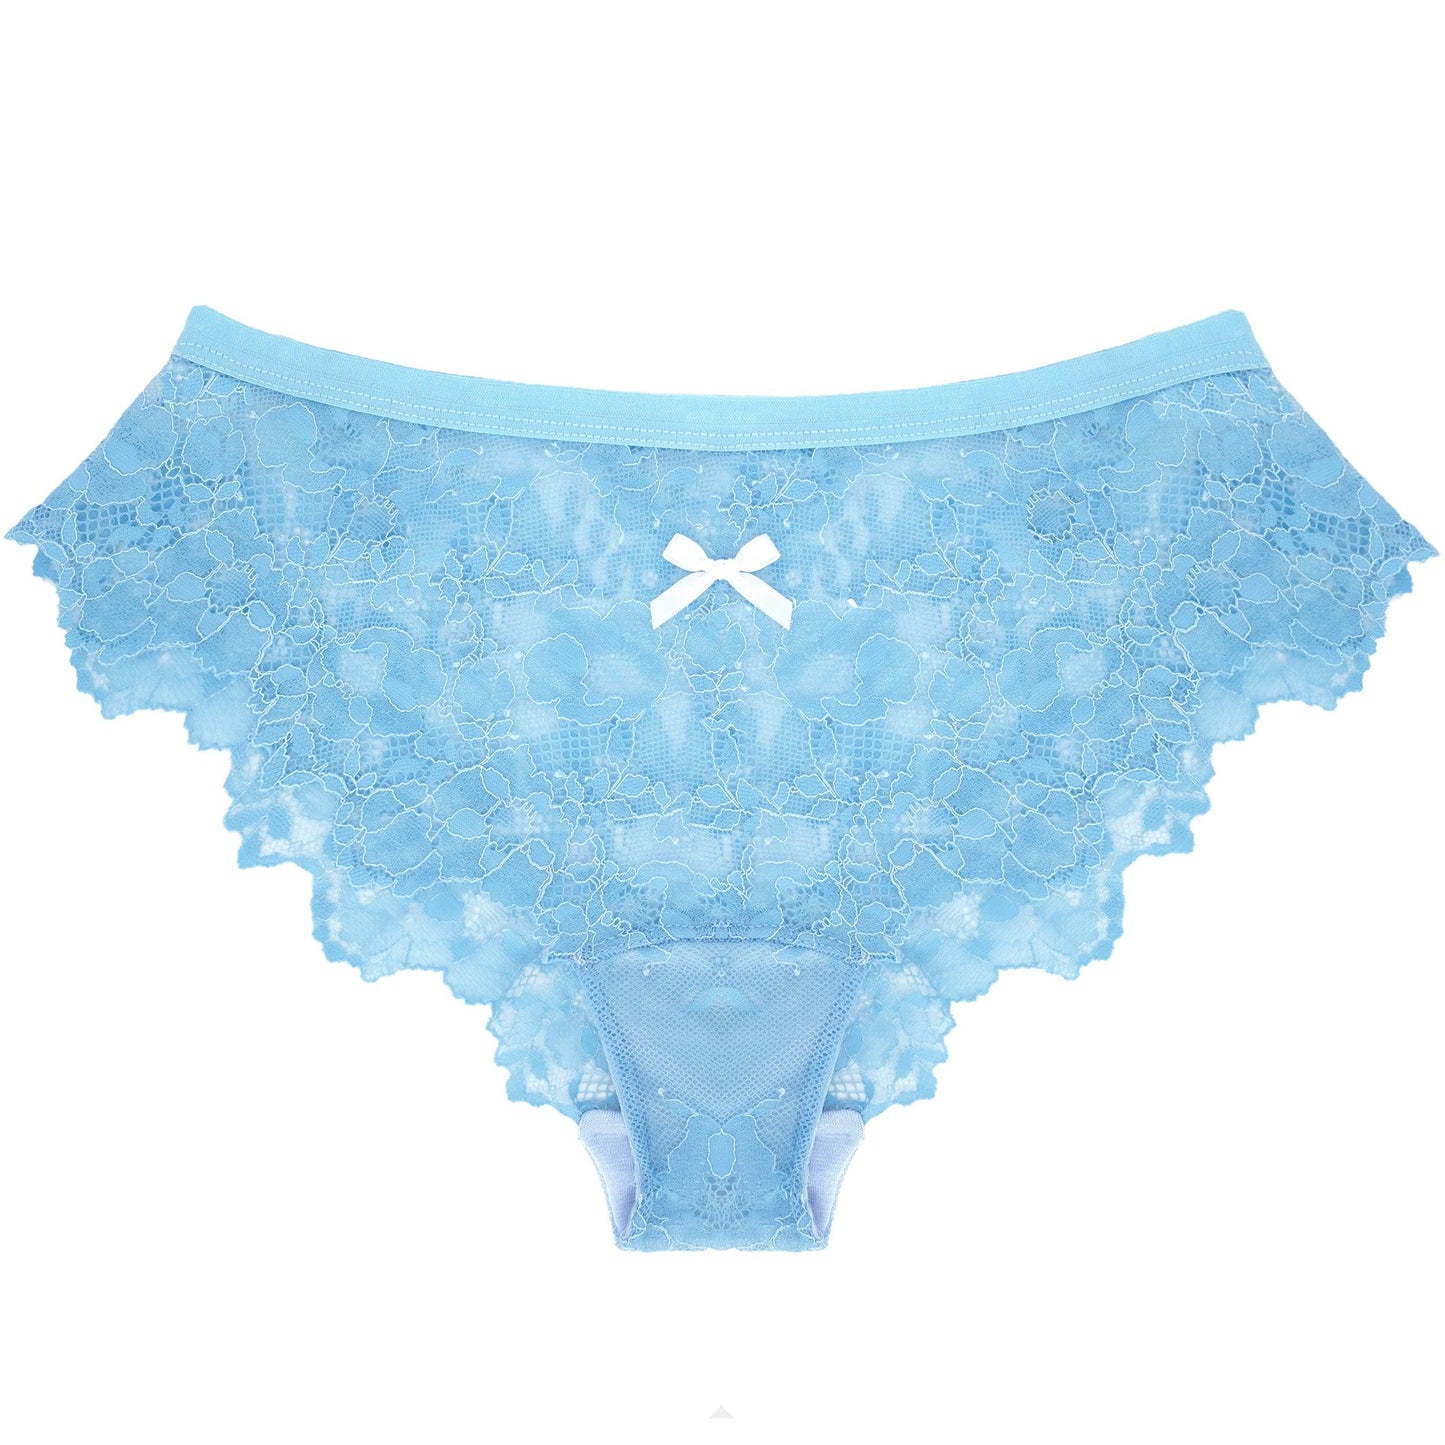 Lace Panty in Wedgwood Blue - Takkleberry